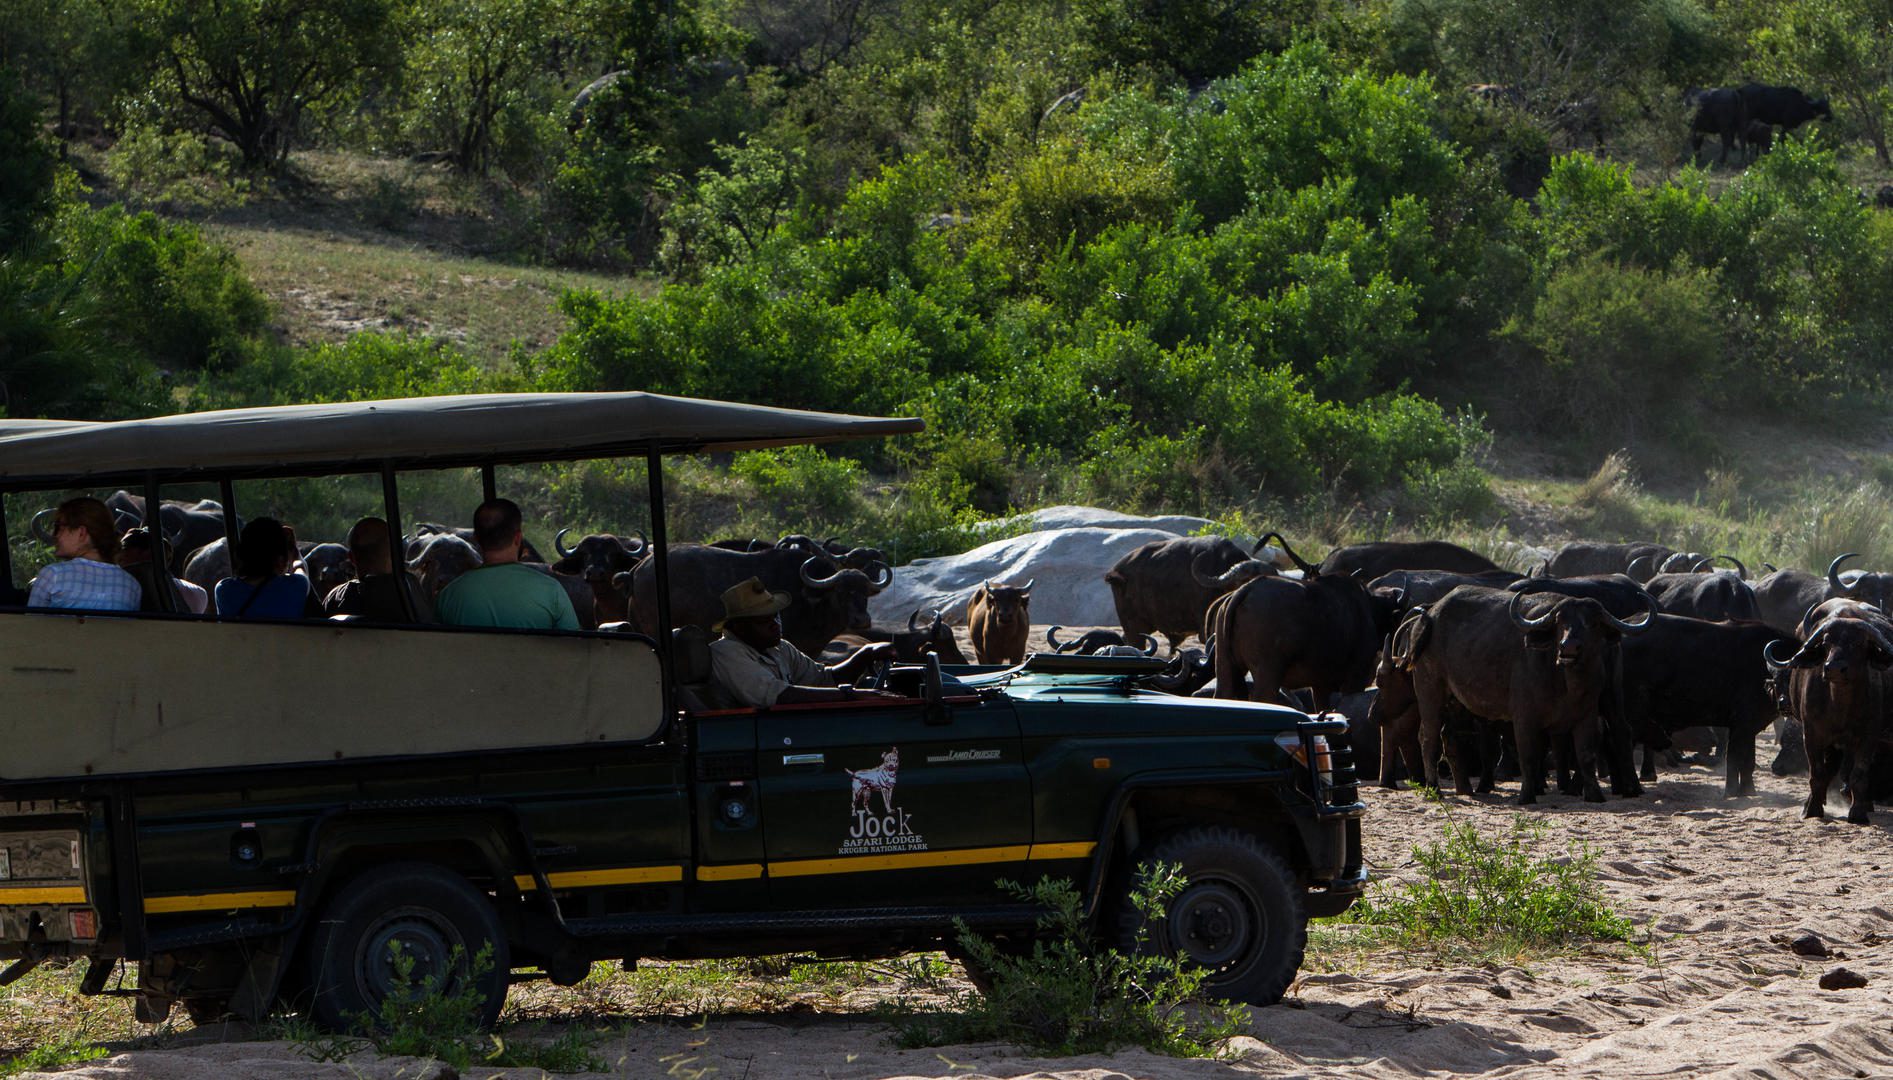 jock safari lodge african safari direct (47)